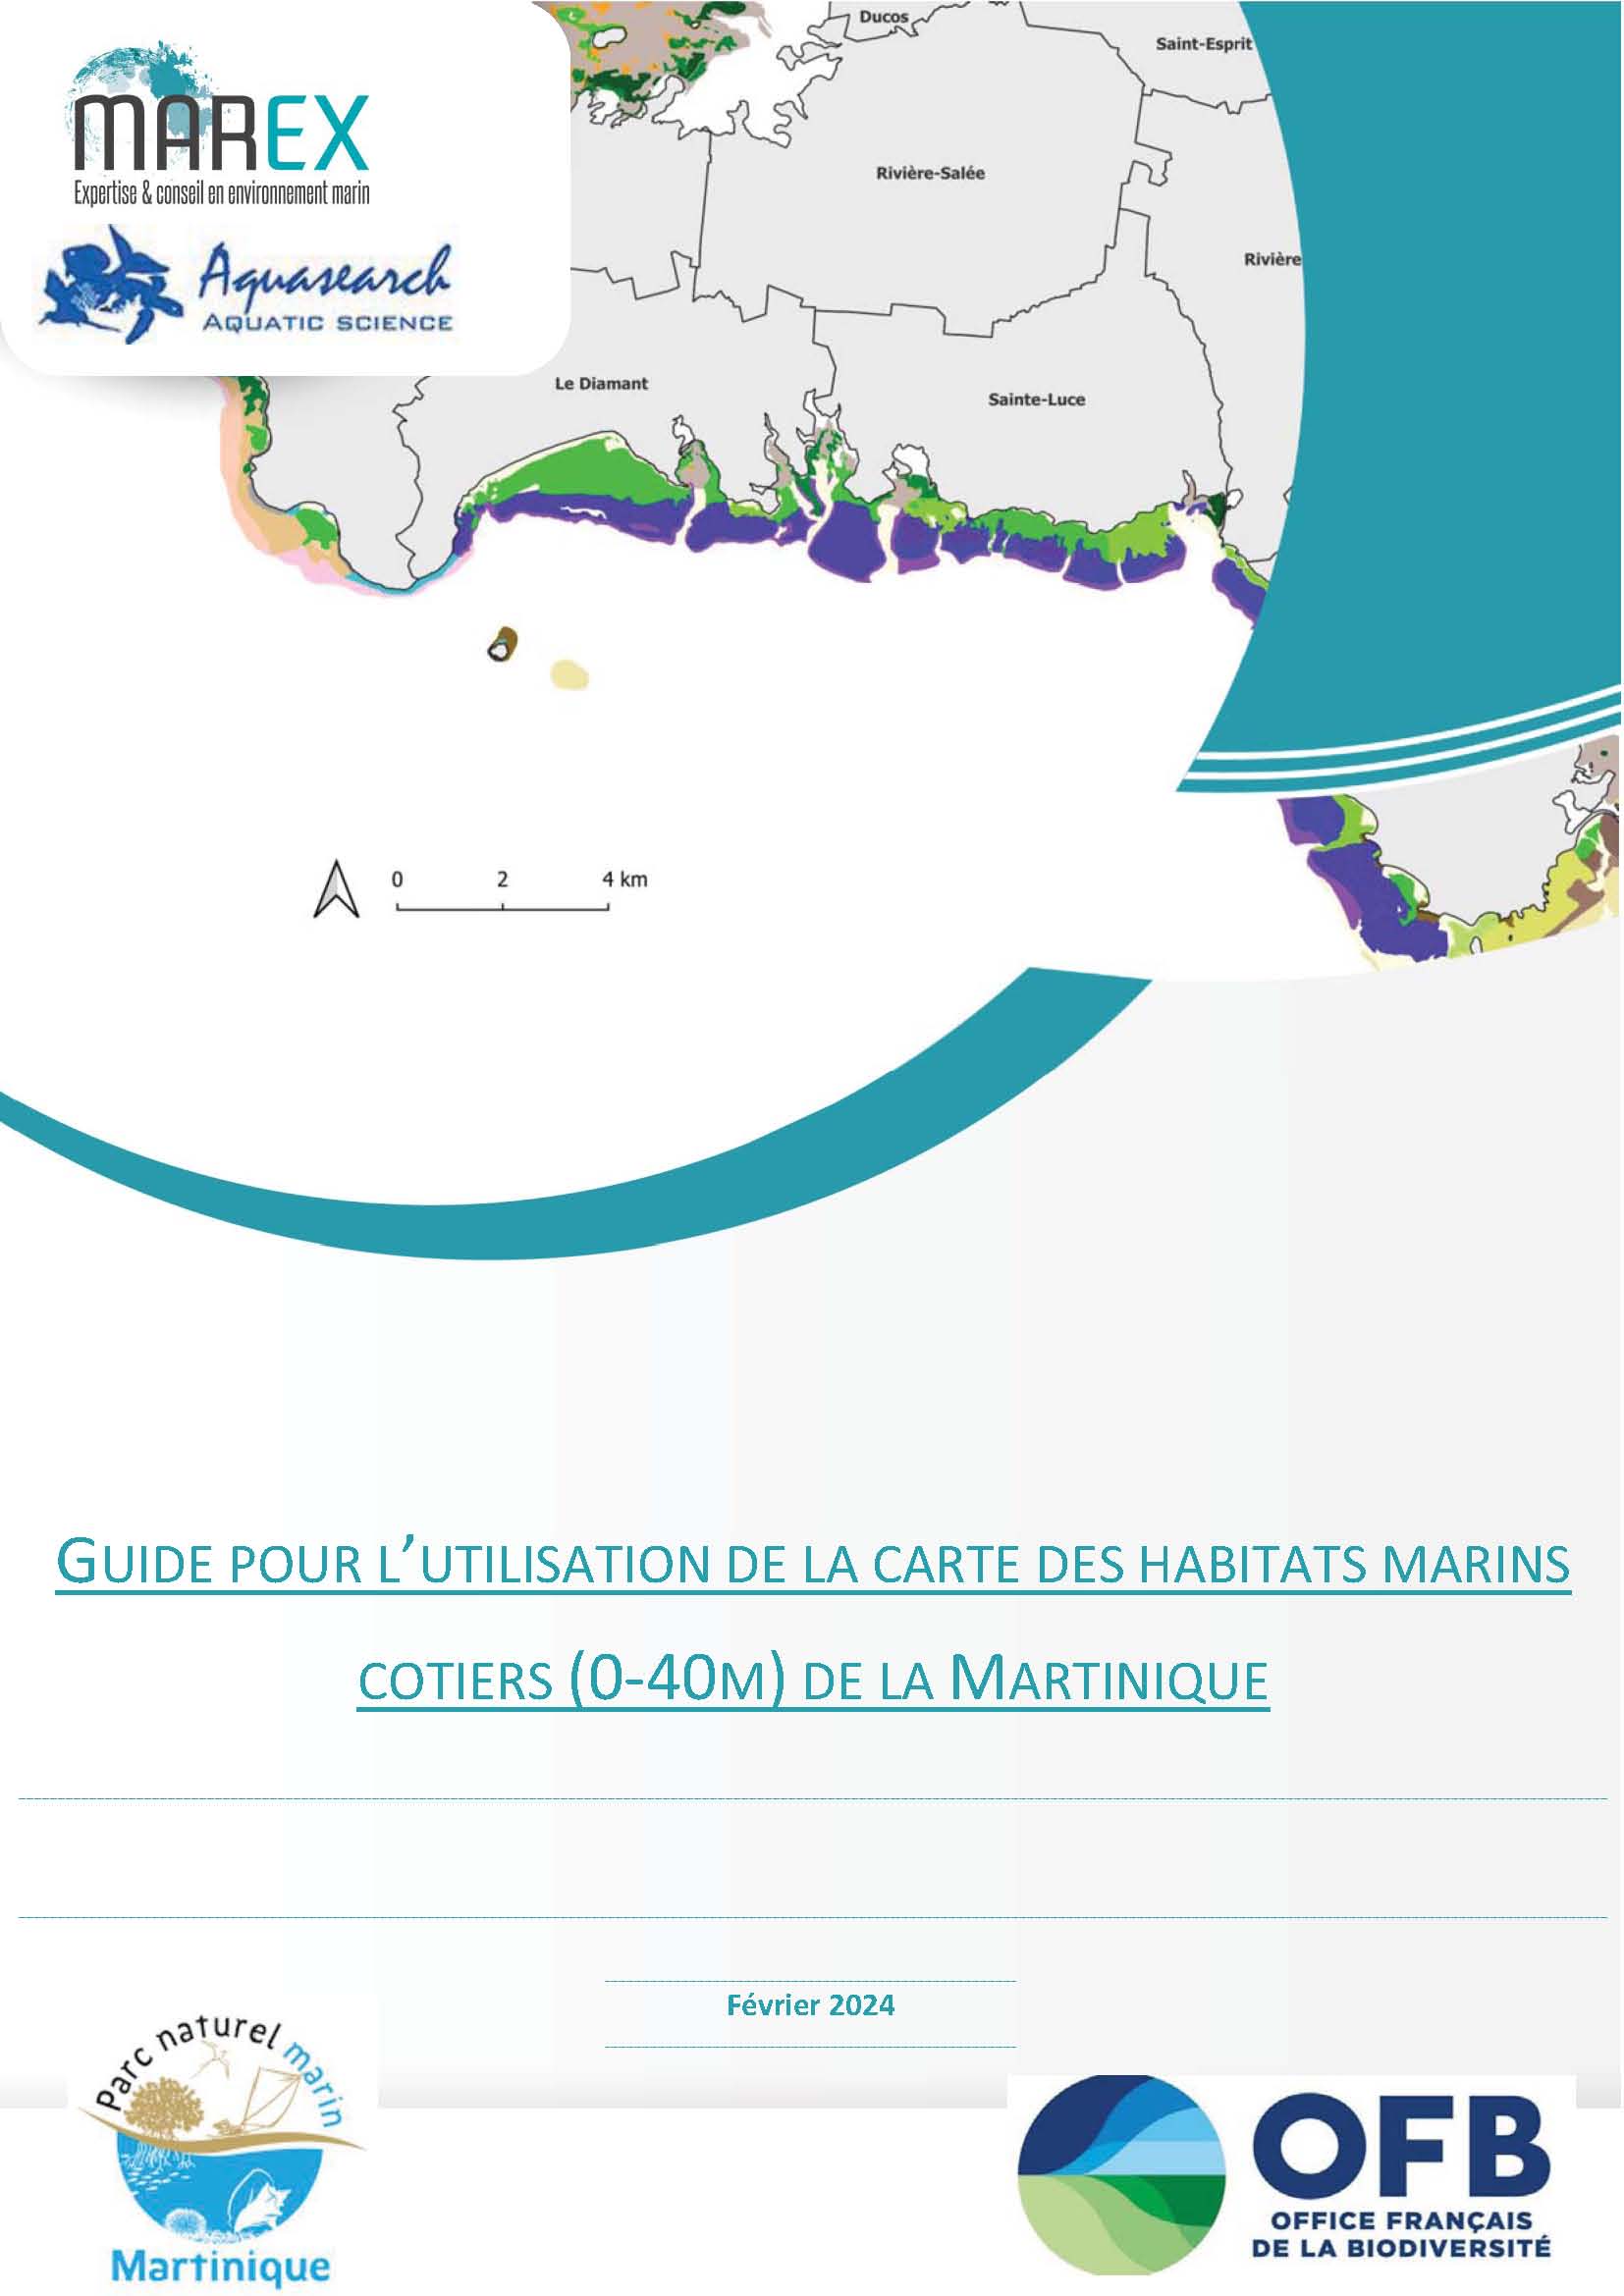 Guide pur l’utilisation de la carte des habitats marins côtiers (0-40m) de la Martinique.